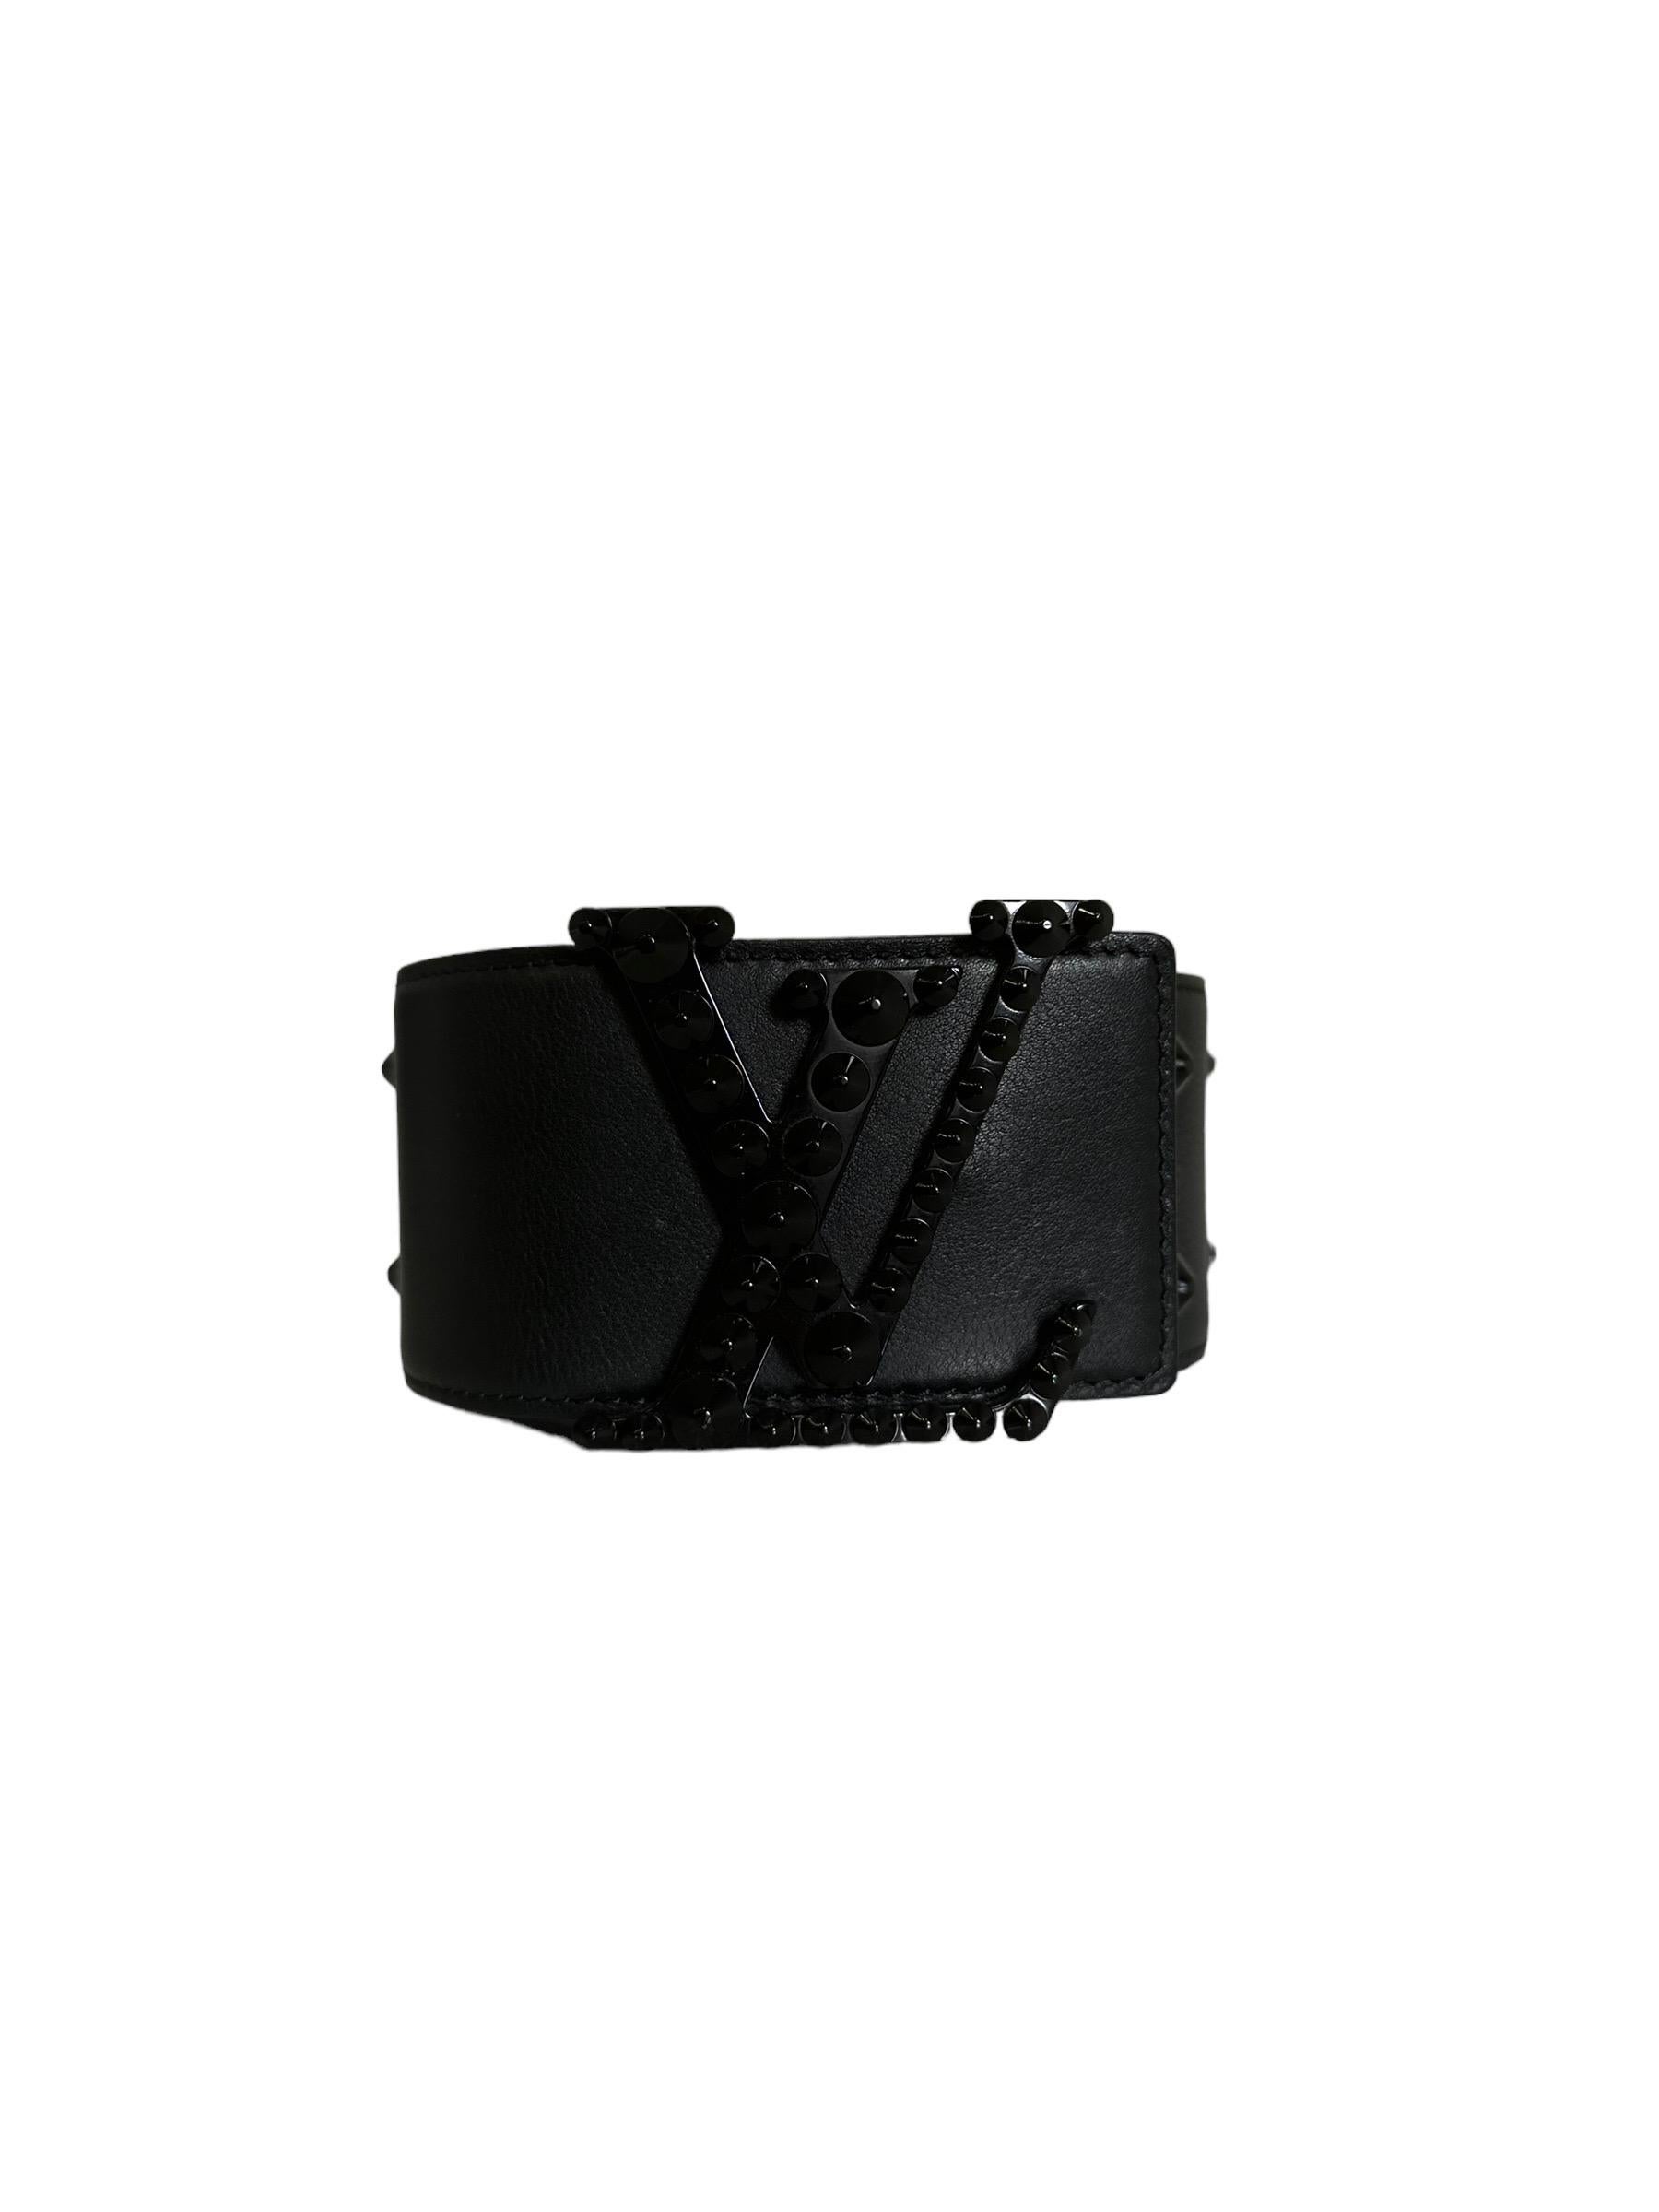 Louis Vuitton 85 Black Leather Belt Studs For Sale 2